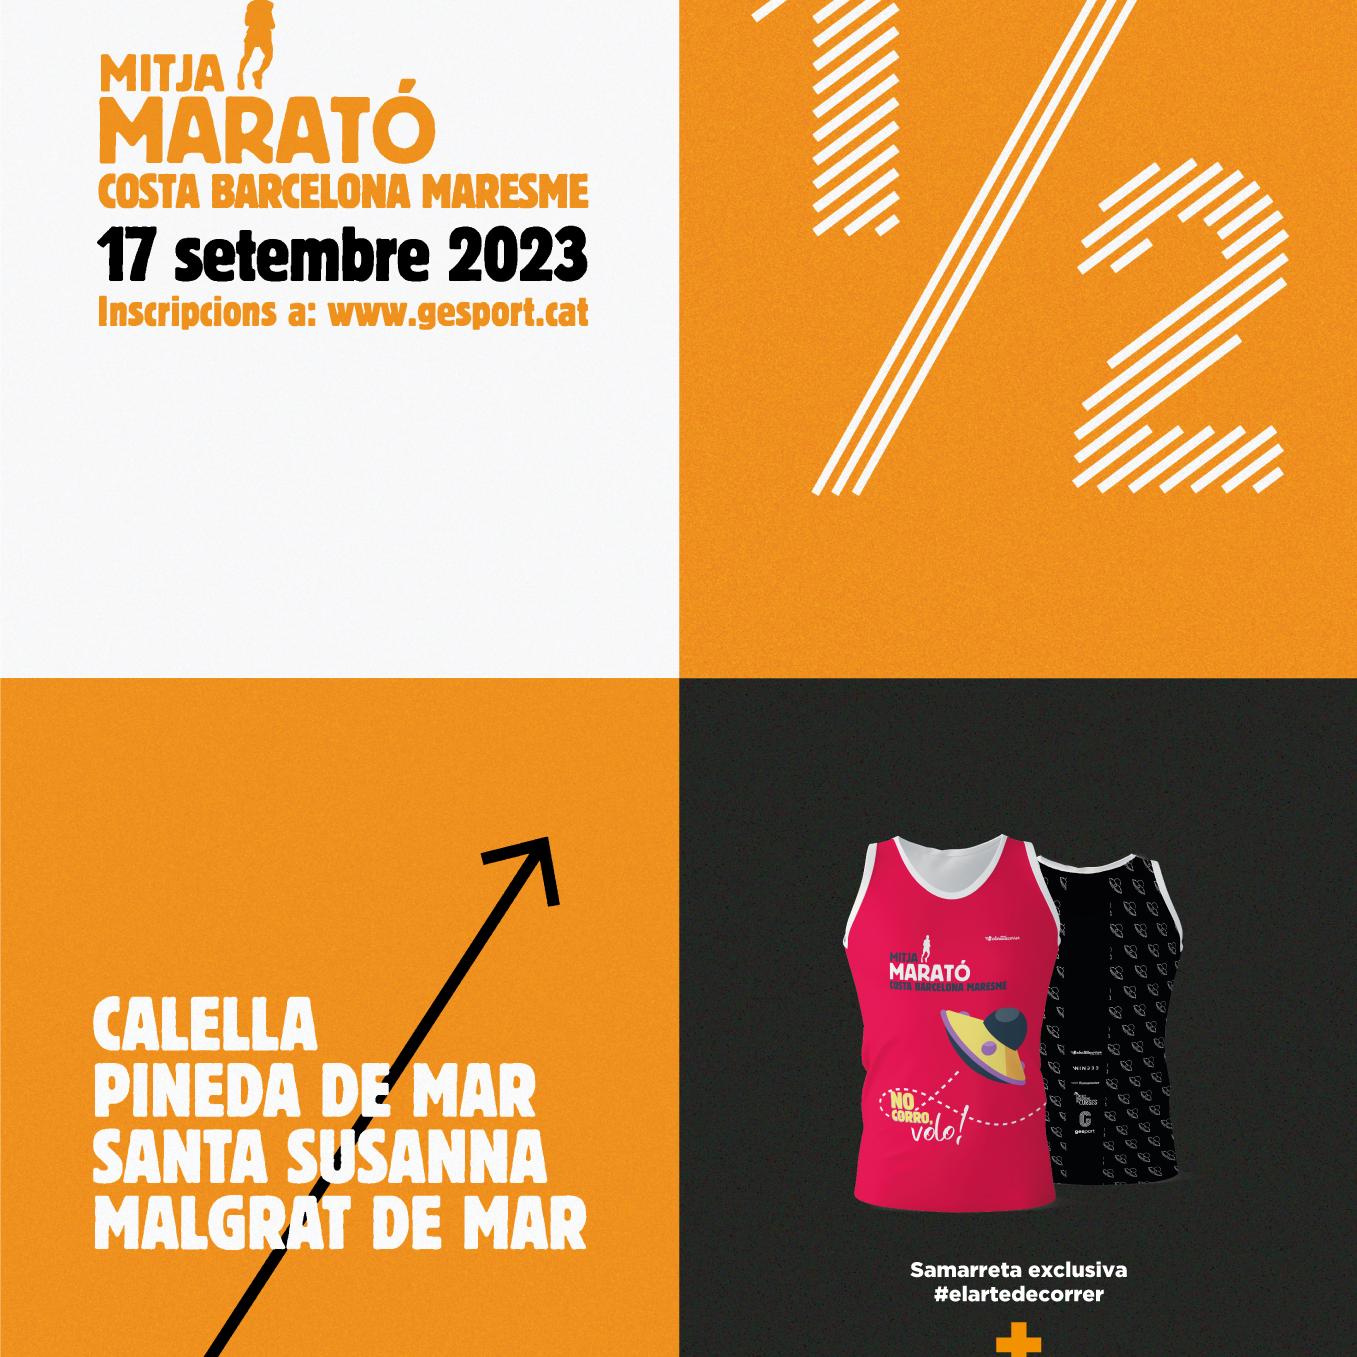 Restriccions de trànsit aquest diumenge per la Mitja Marató Costa Brava-Maresme